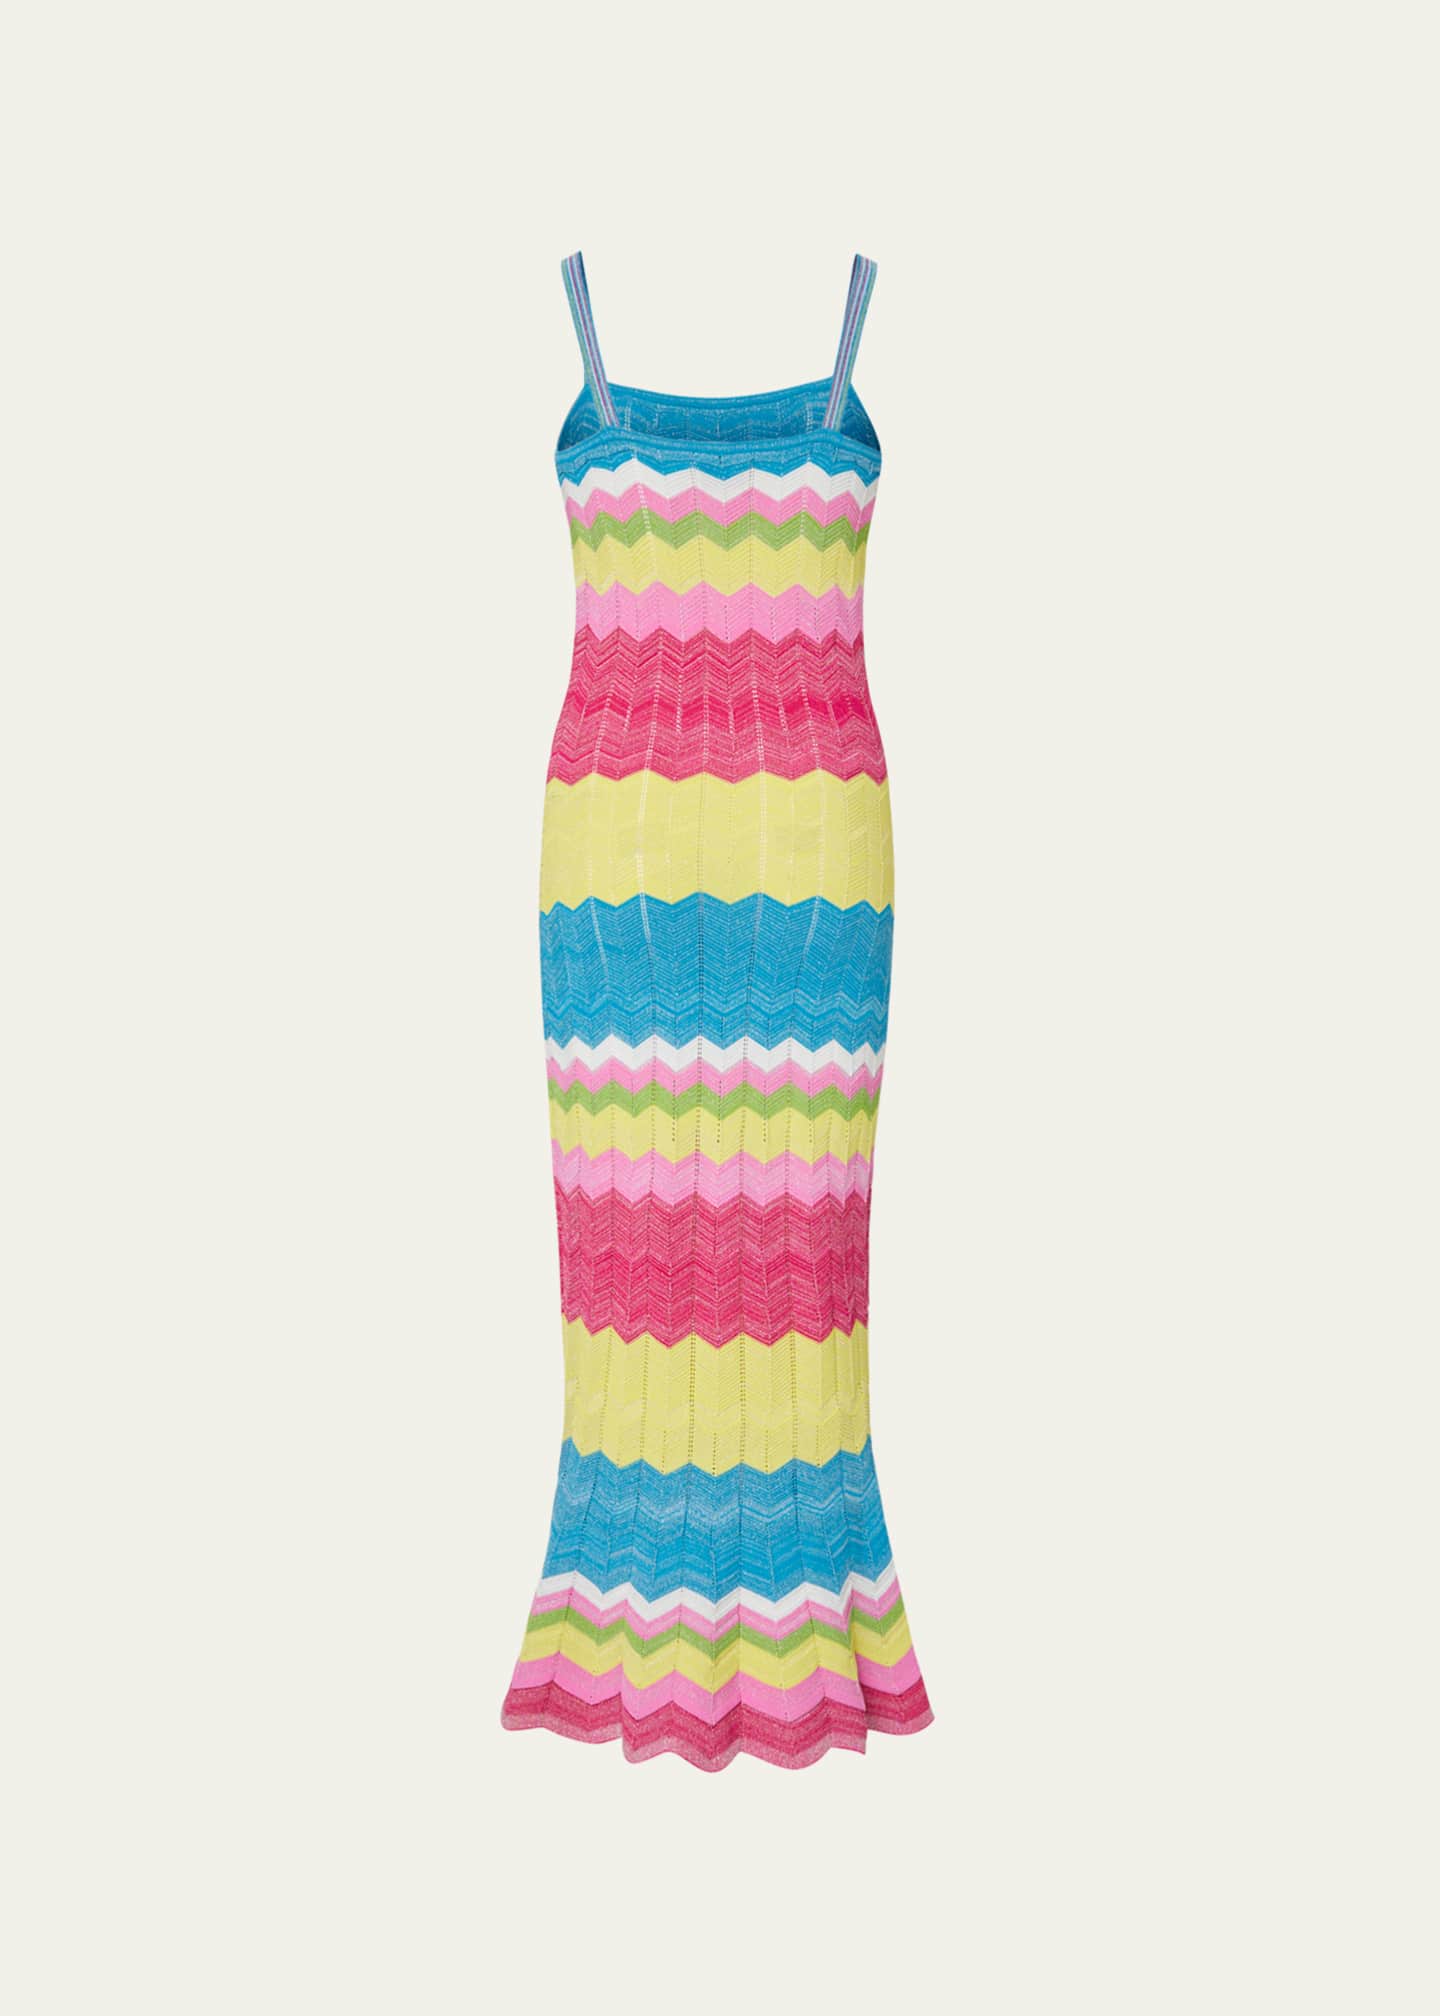 Milly Olana Zig-Zag Knit Mermaid Dress - Bergdorf Goodman